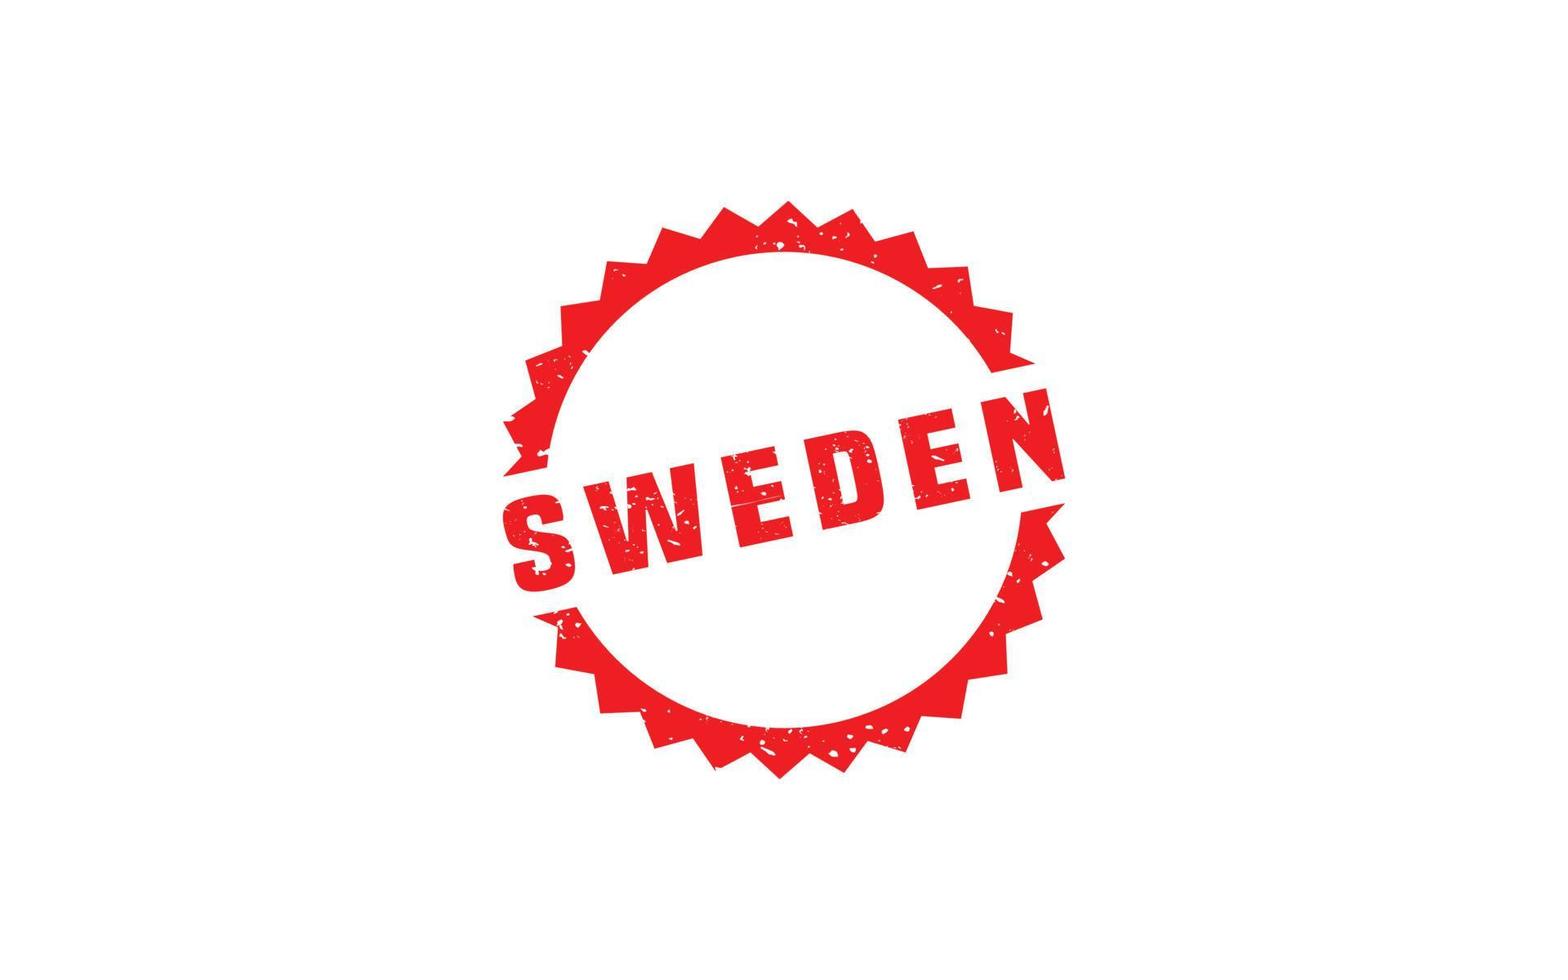 Schweden Briefmarke Gummi mit Grunge Stil auf Weiß Hintergrund vektor